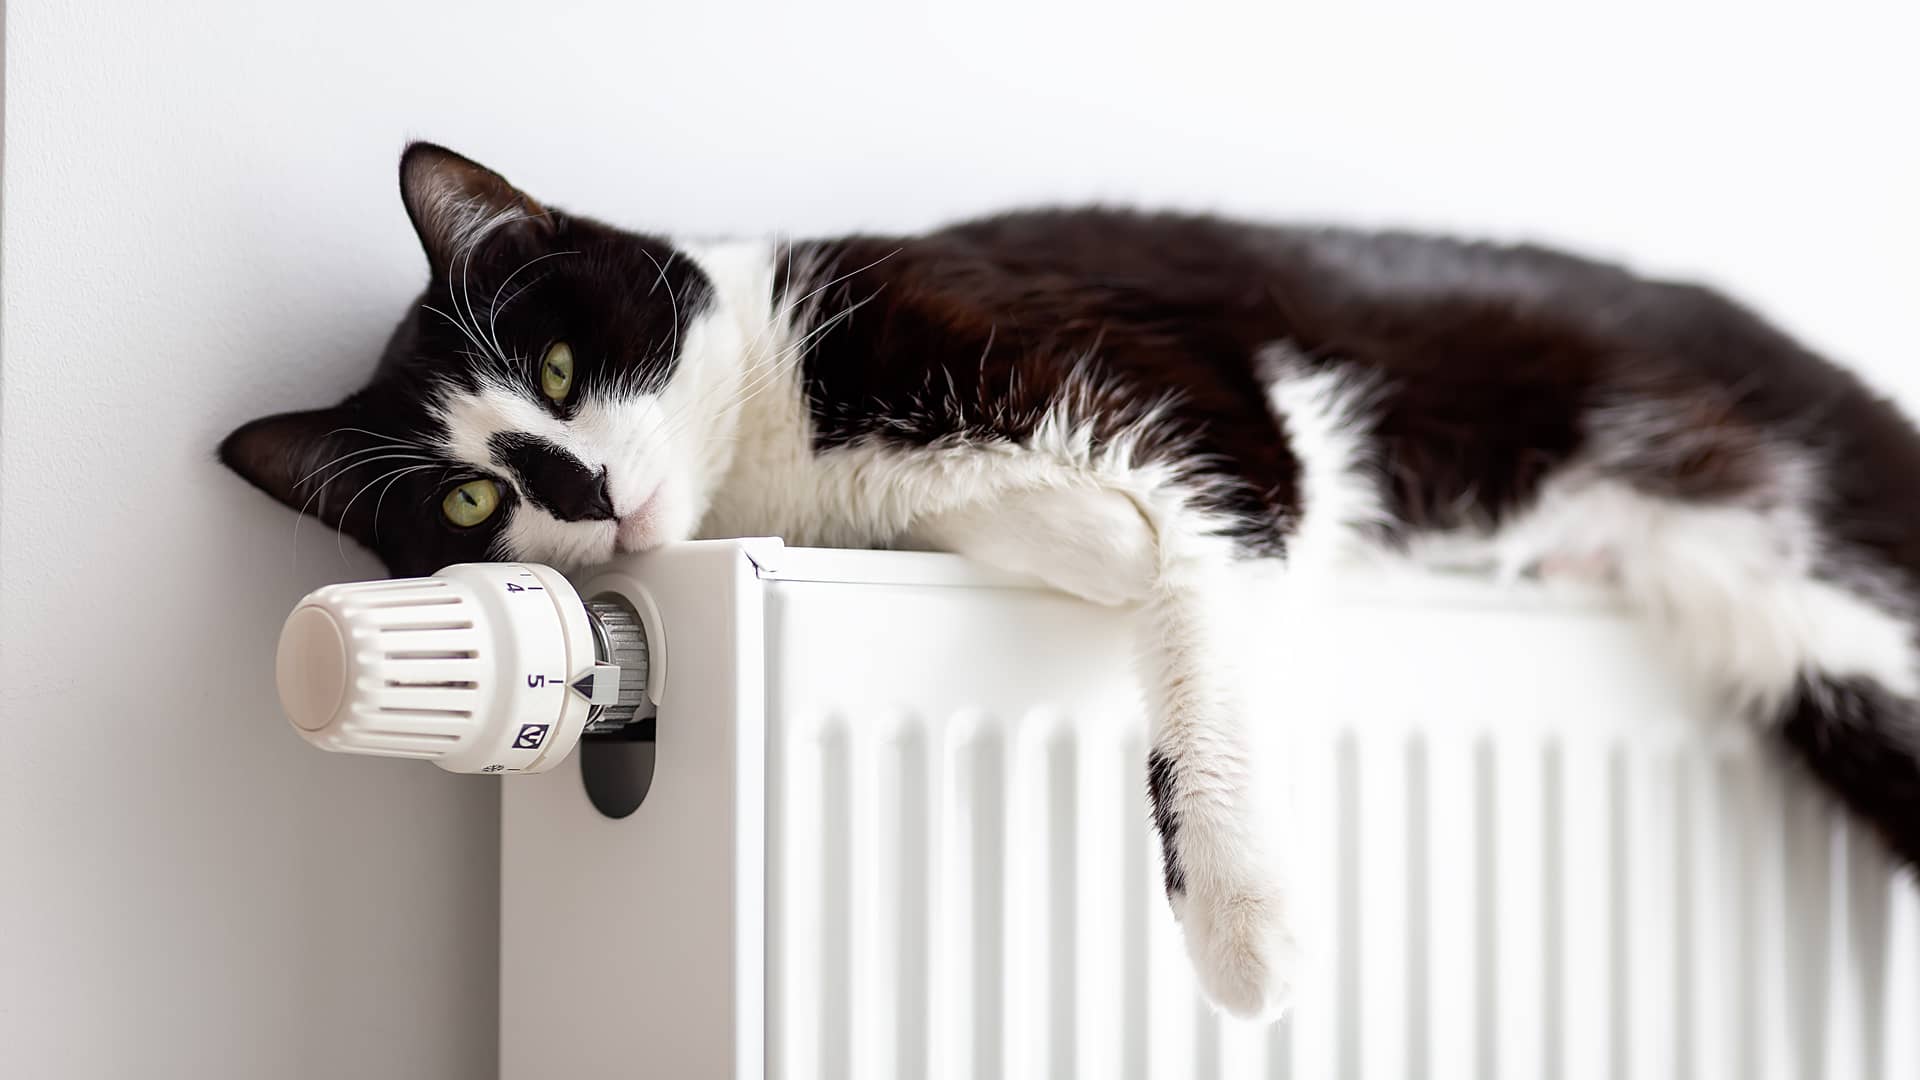 Un gato blanco y negro de ojos verdes descansa sobre un radiador, sus amos disfrutan de una tarifa de gas con logos energía